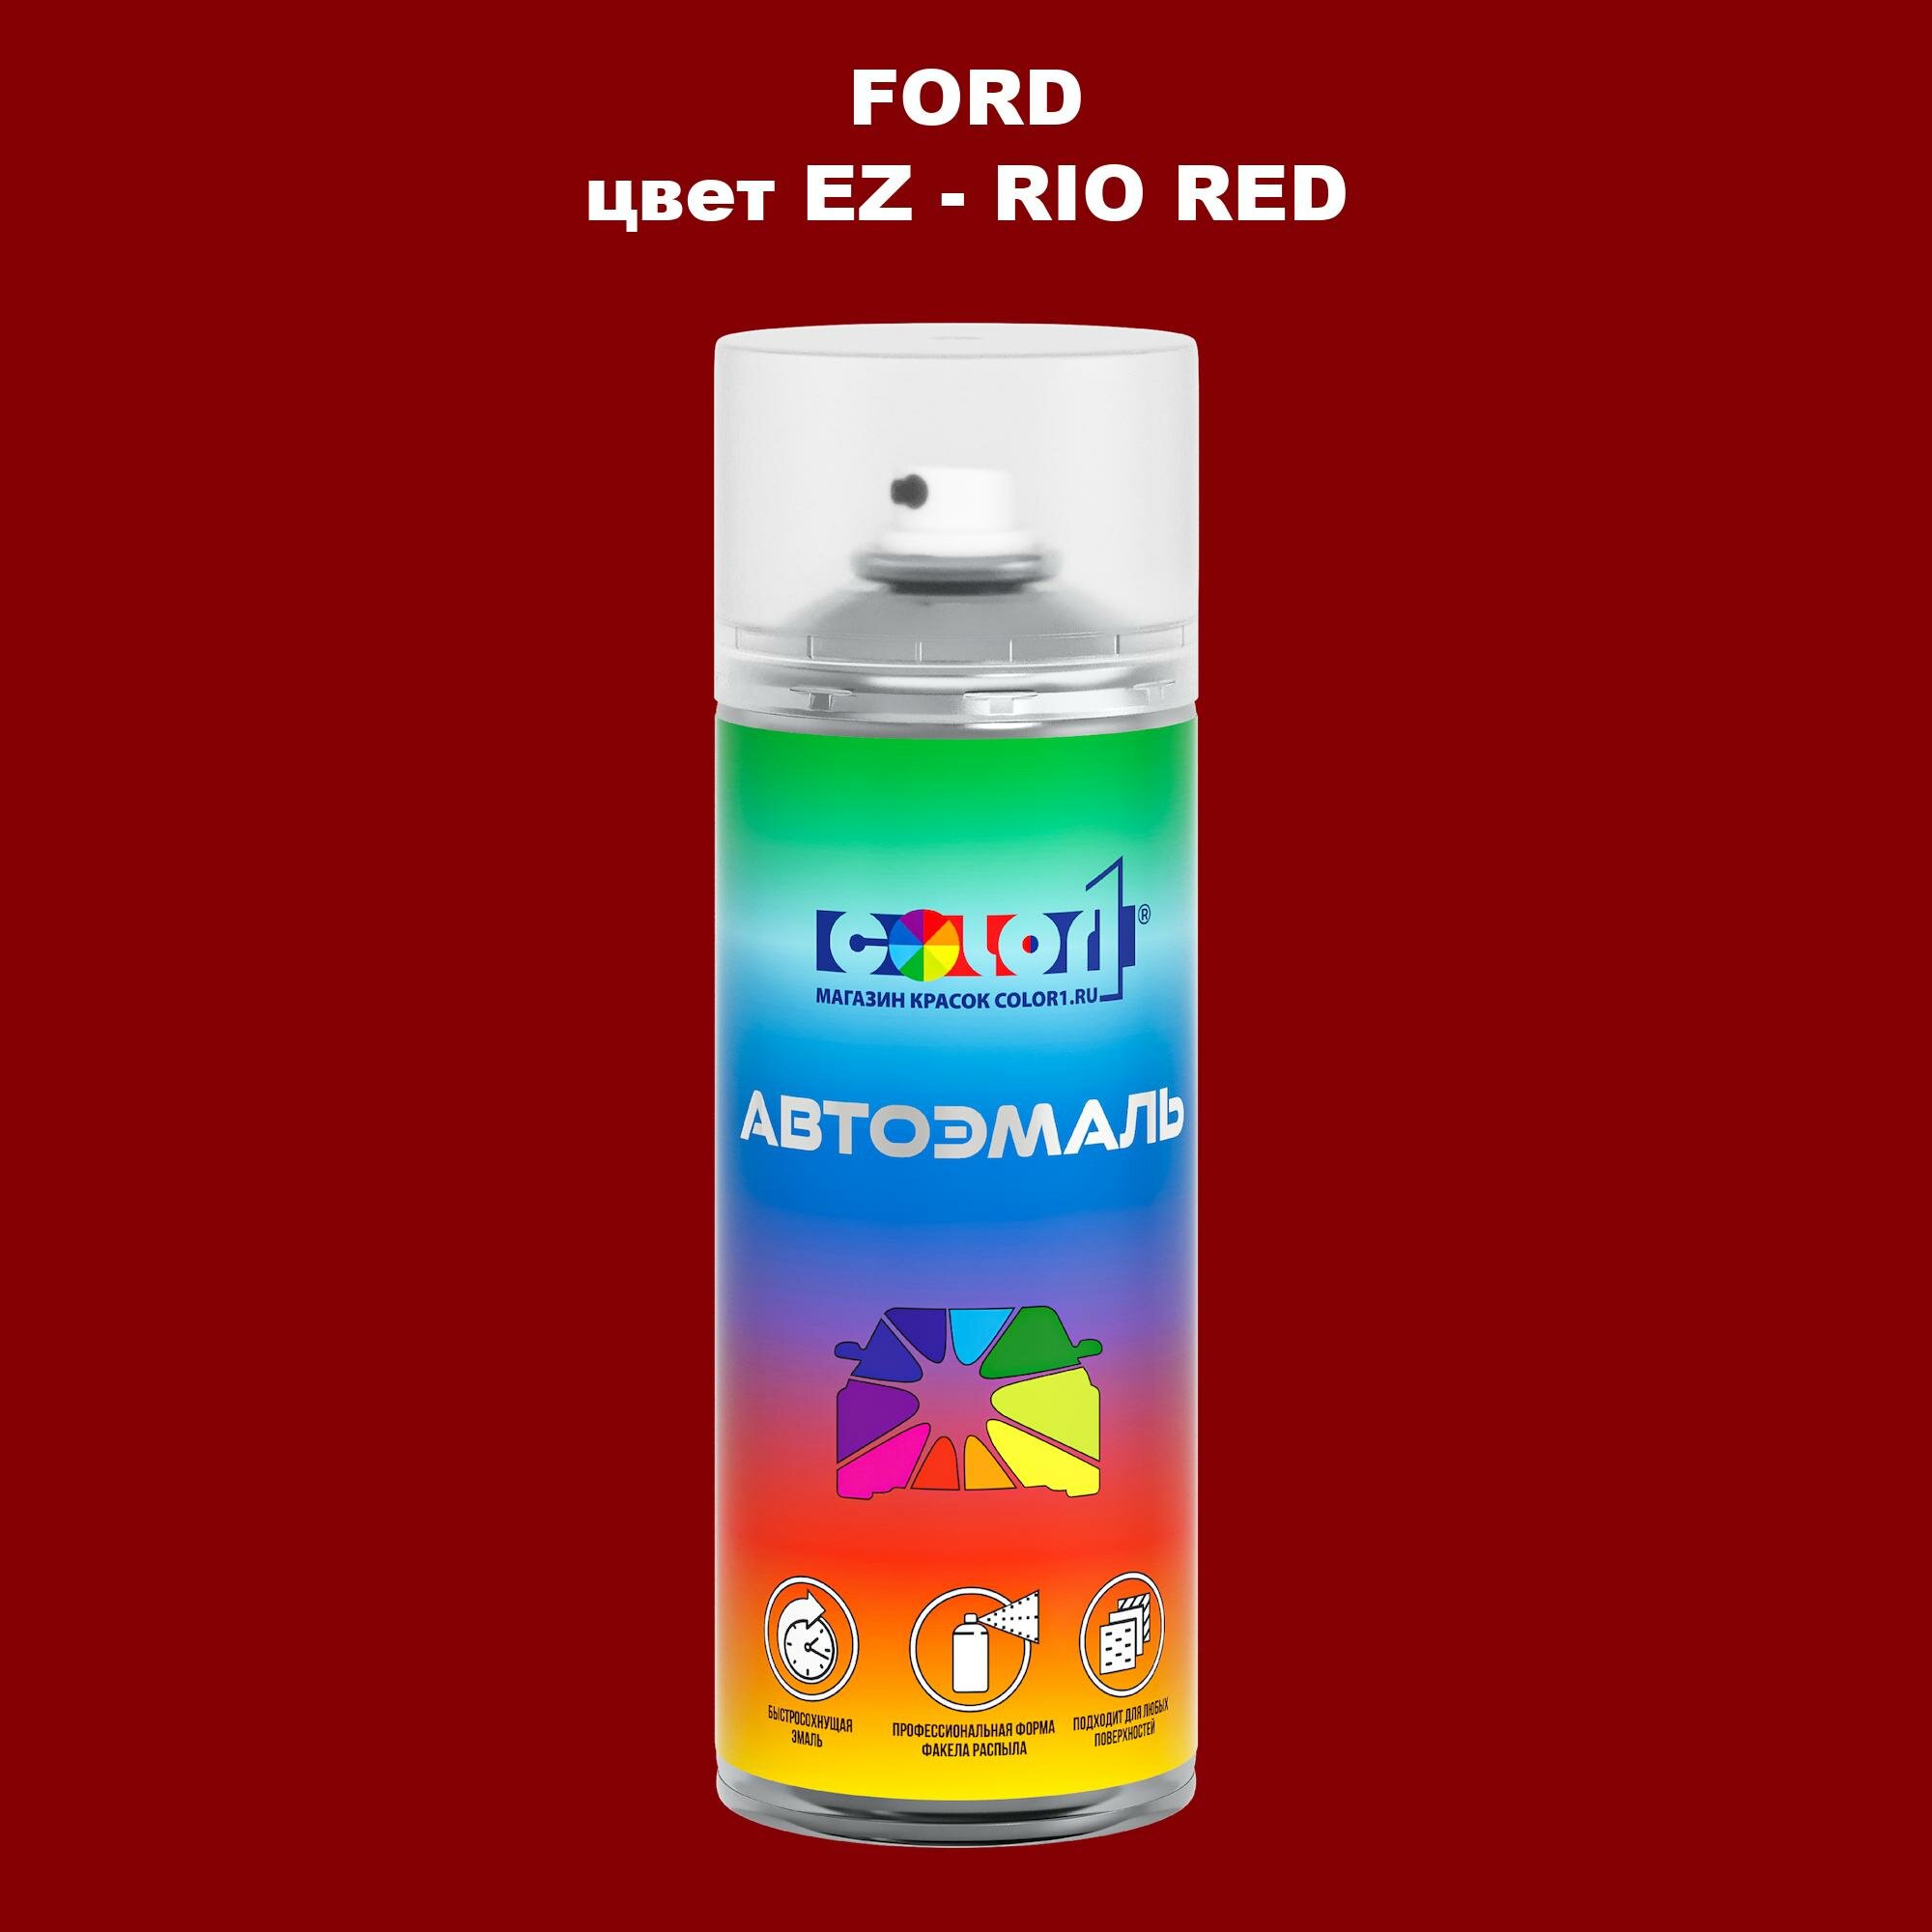 Аэрозольная краска COLOR1 для FORD, цвет EZ - RIO RED